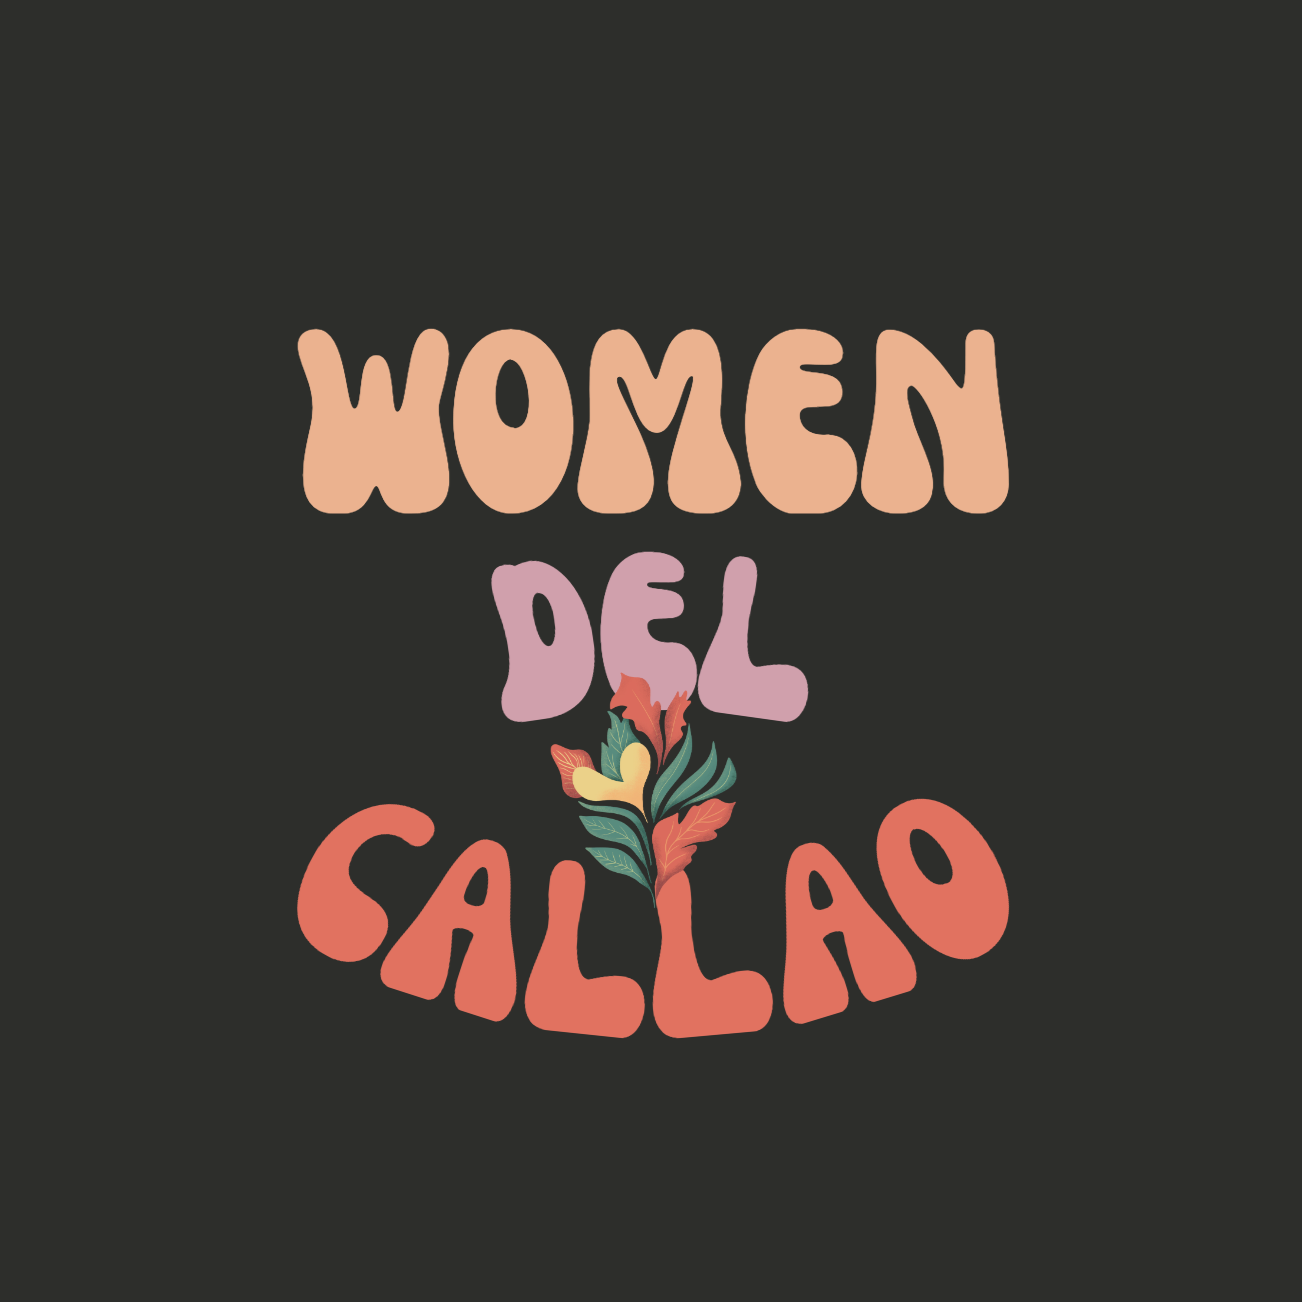 Woman Del Callao Sweatshirt